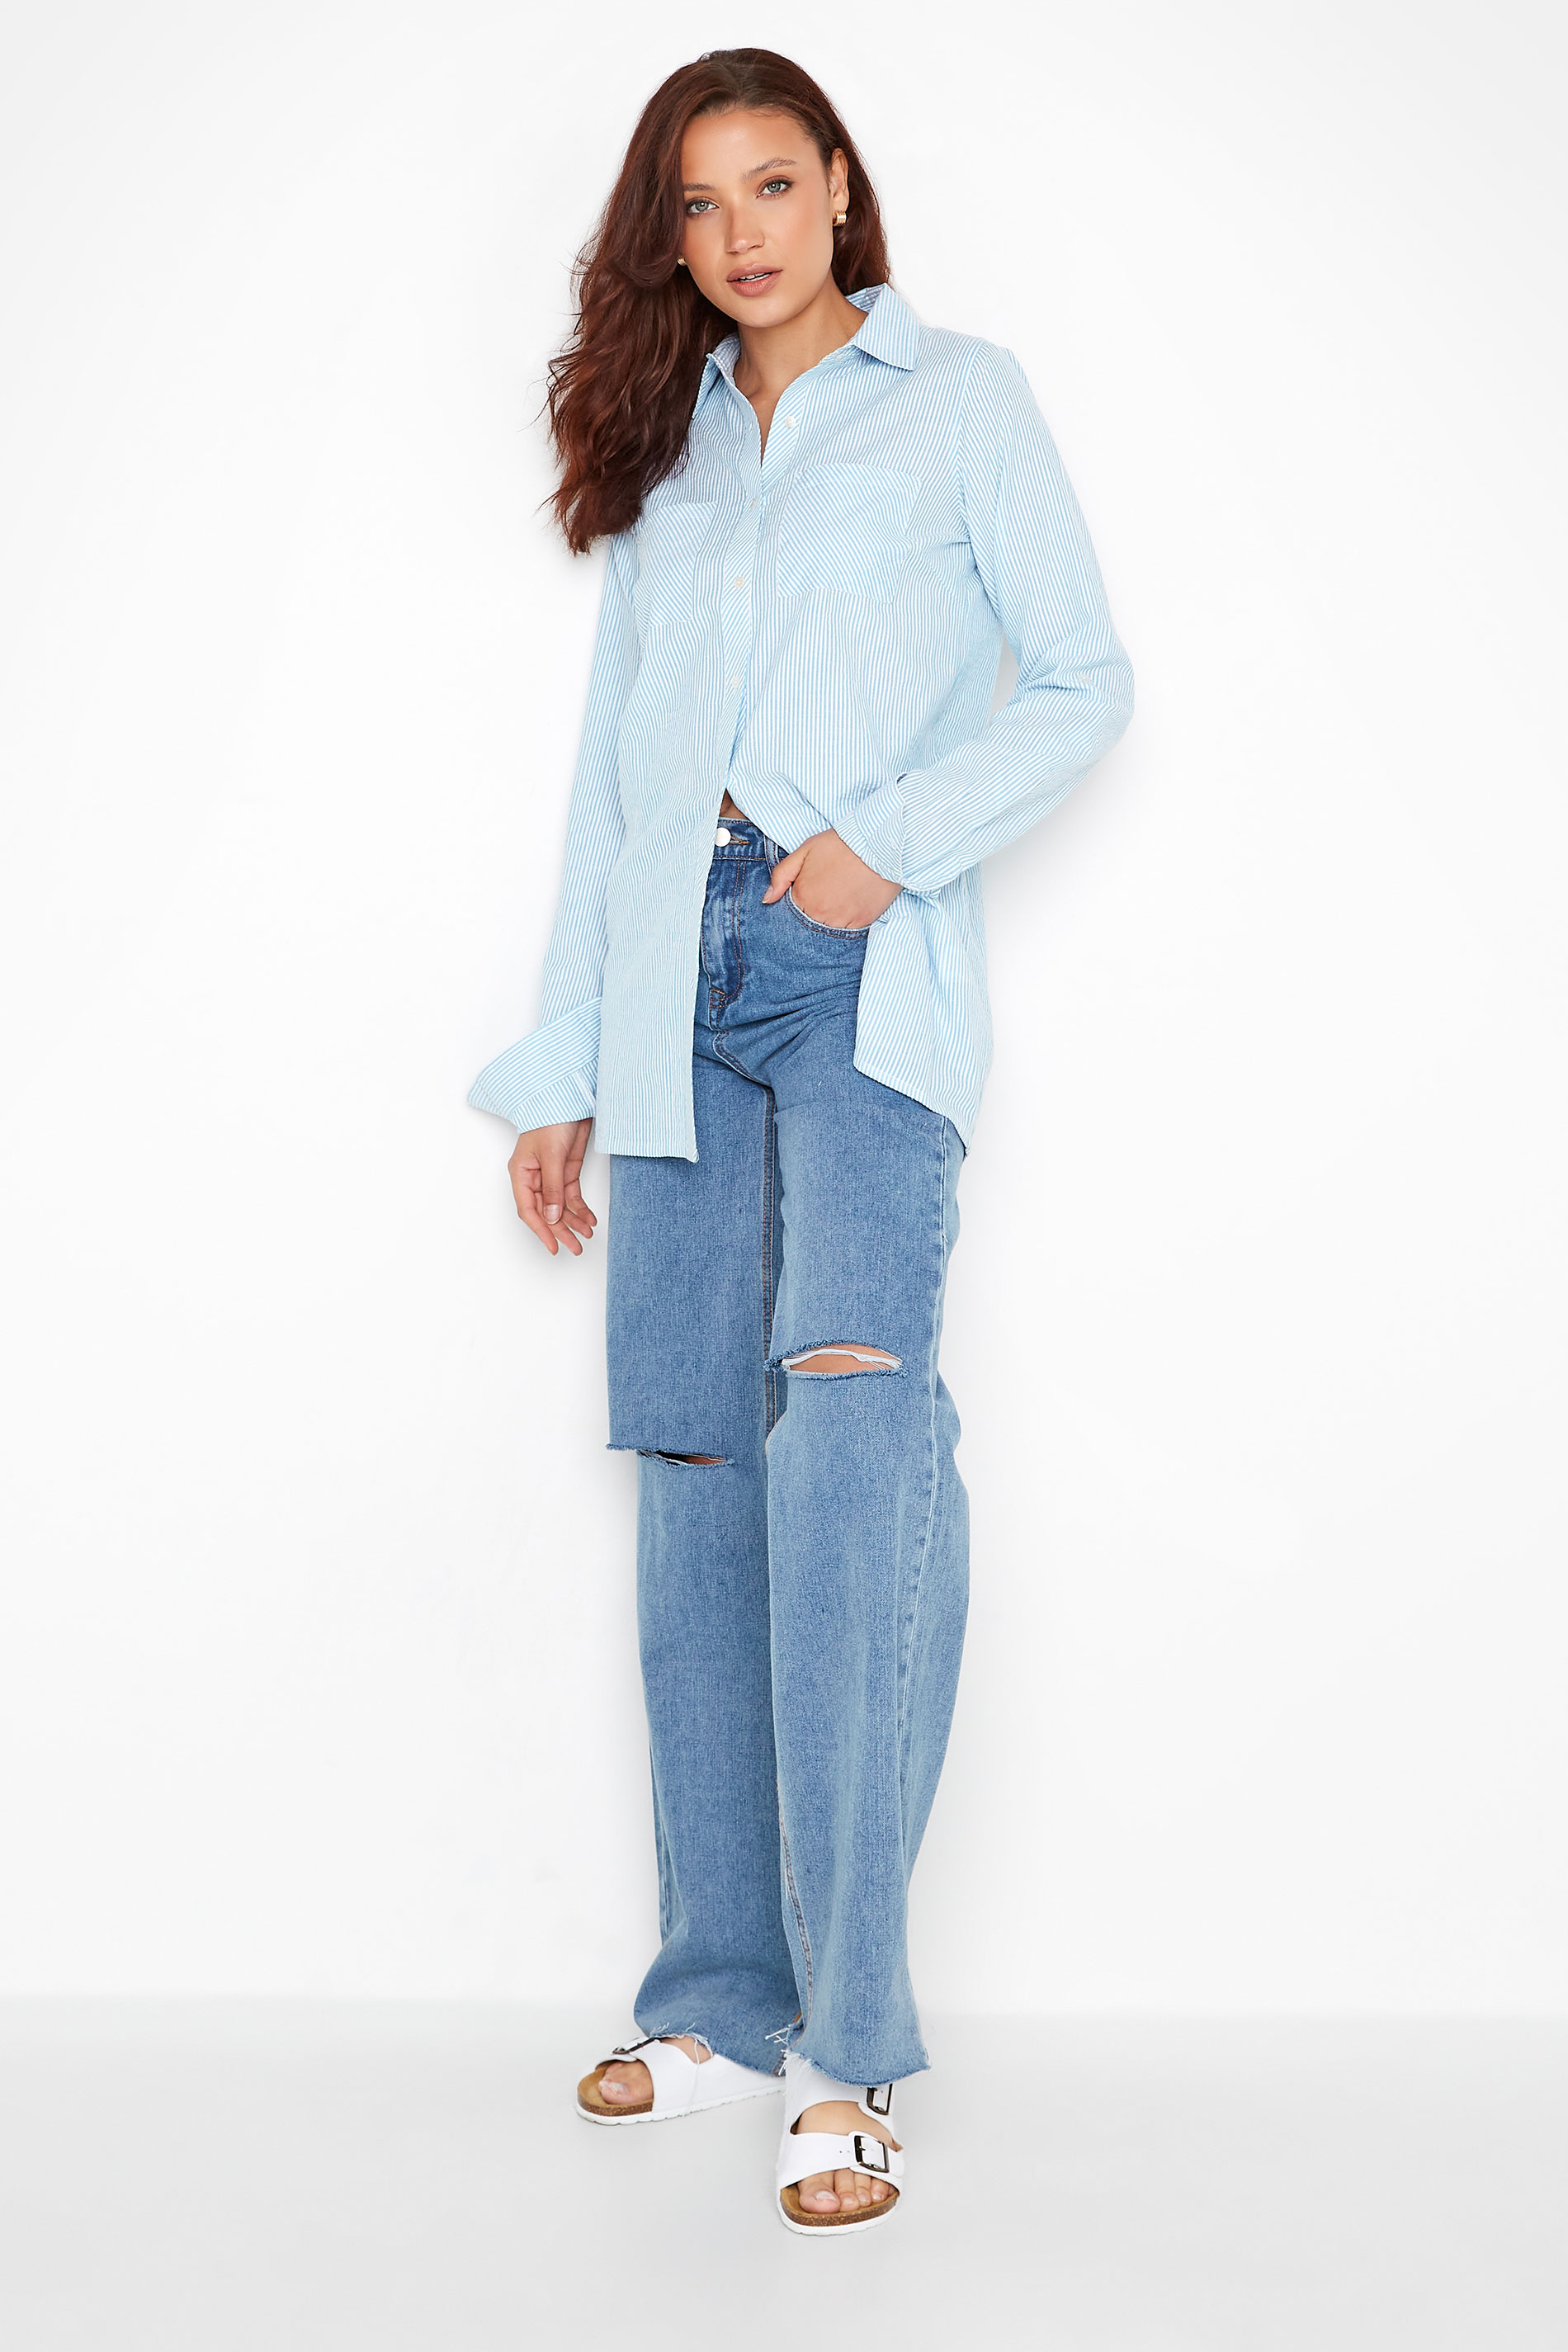 LTS Tall Women's Light Blue Stripe Shirt | Long Tall Sally 2